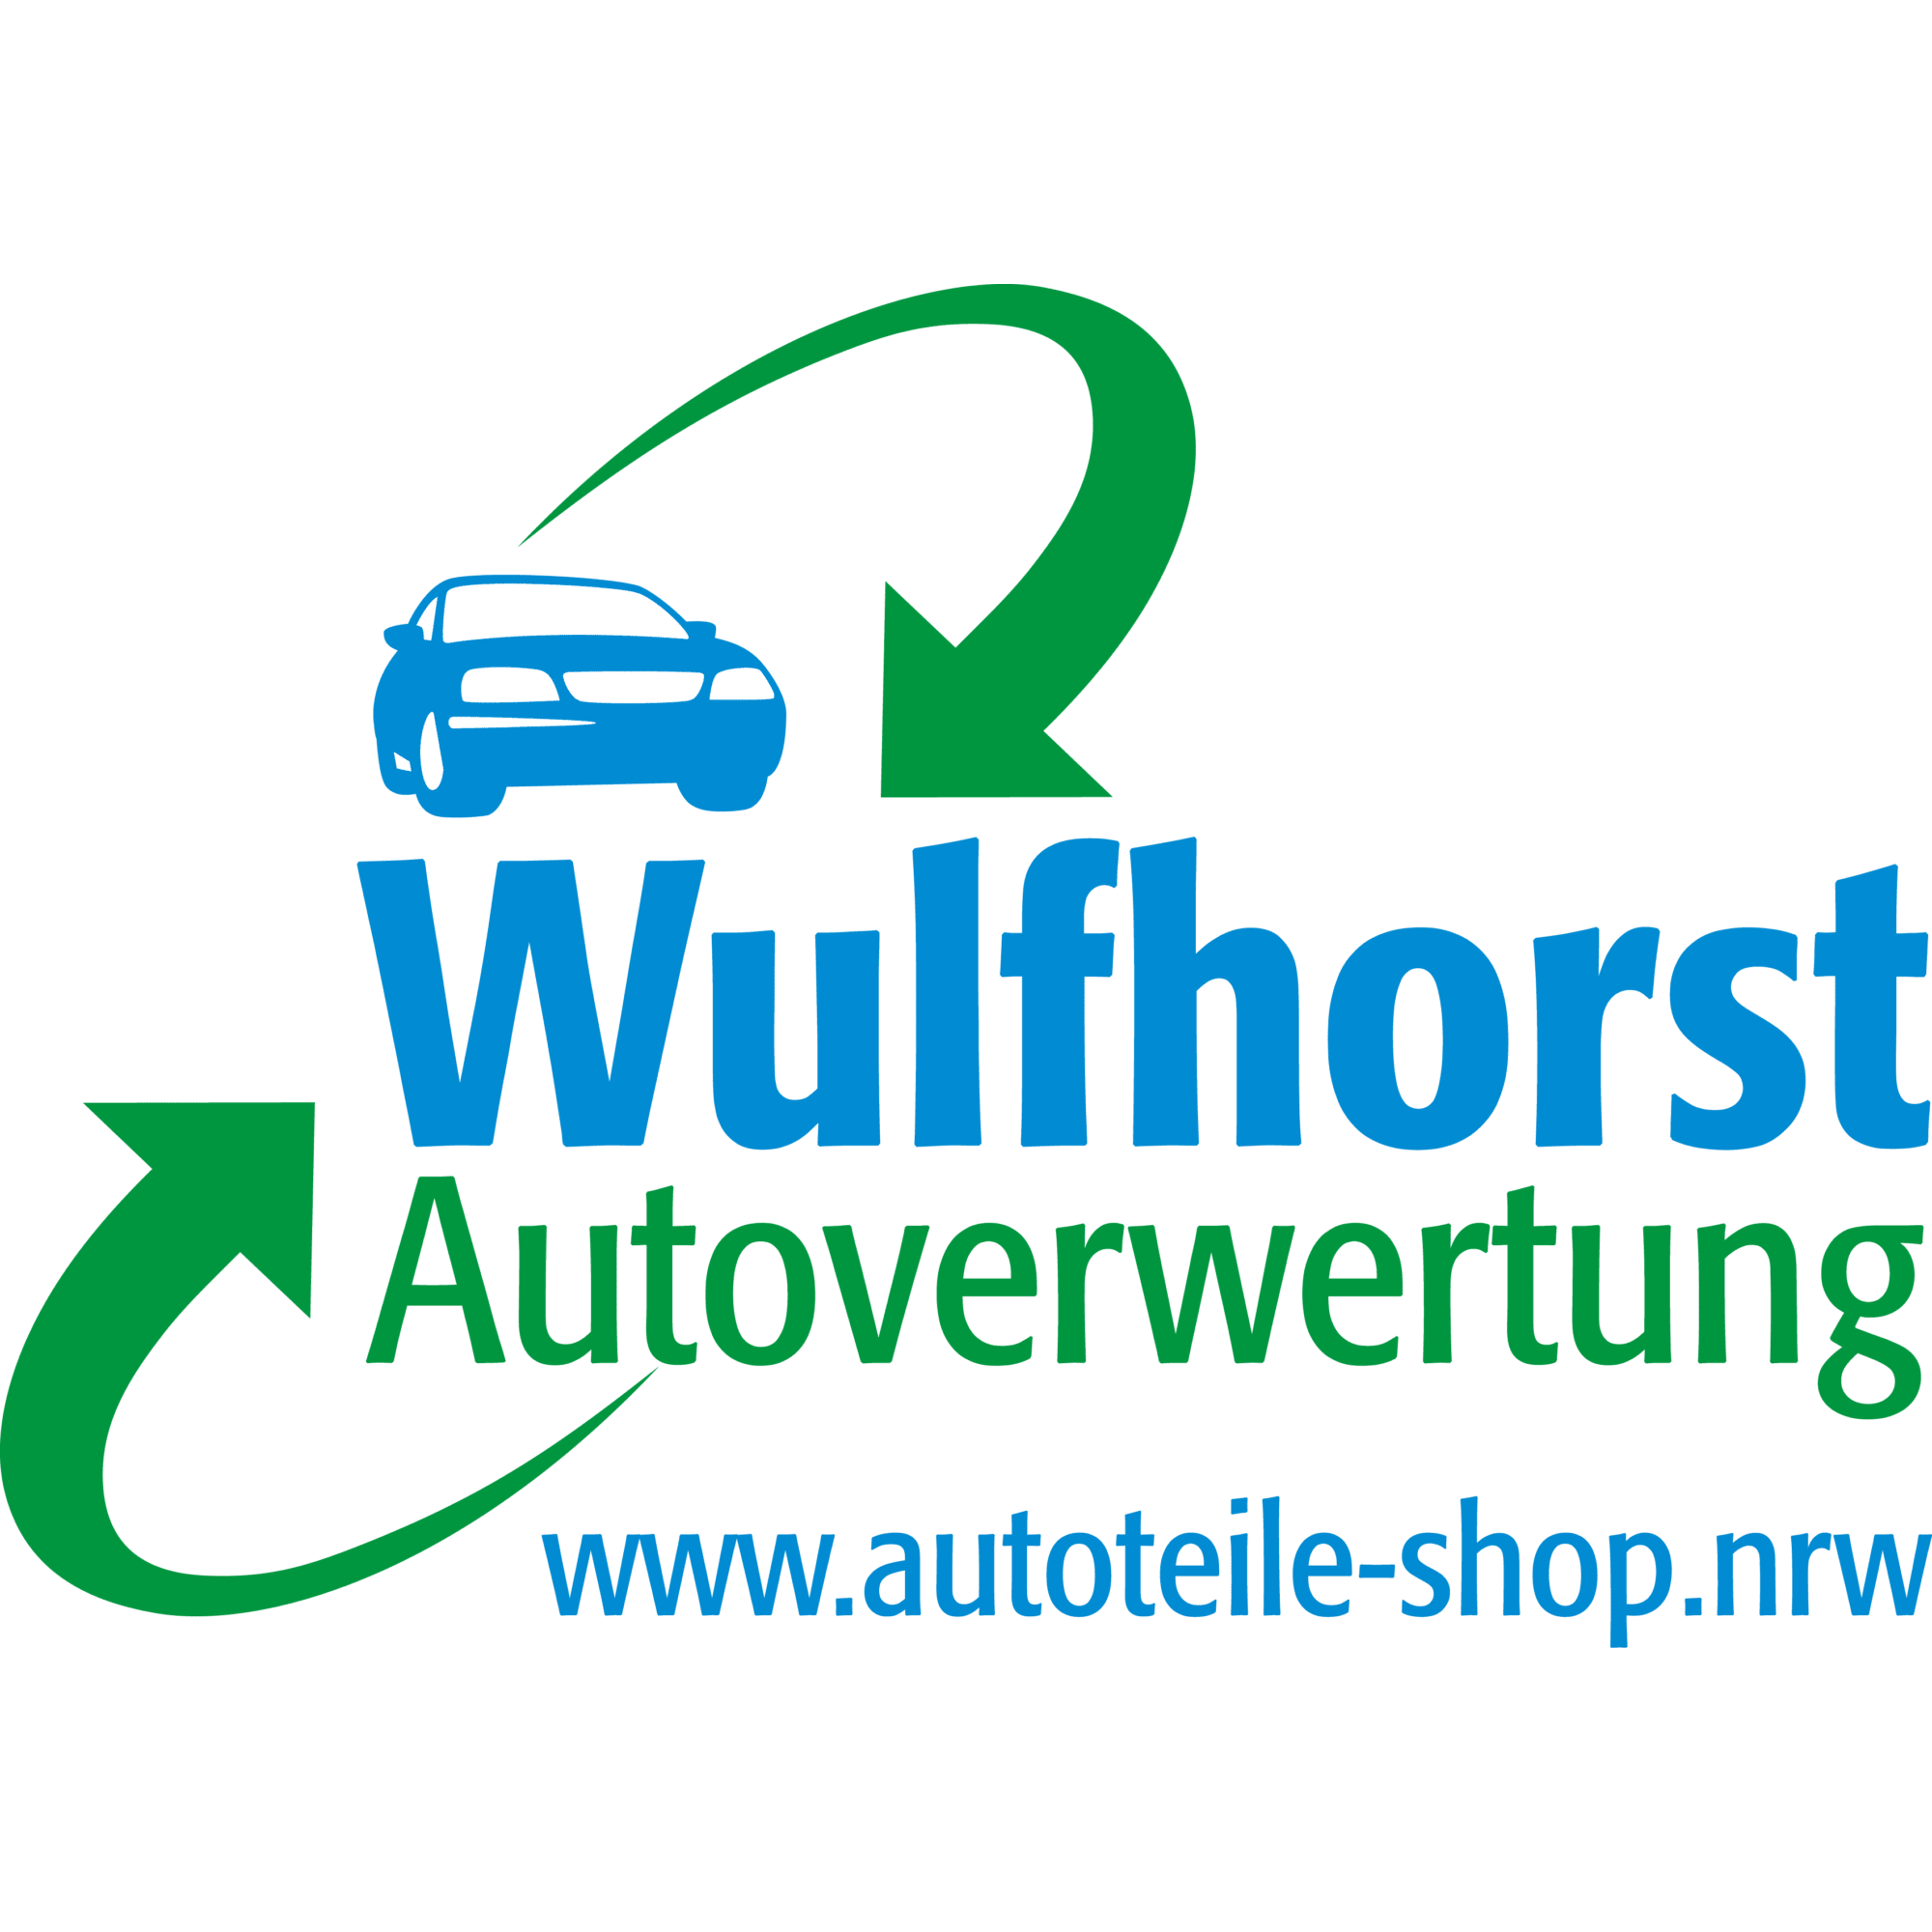 Autoverwertung www.autoteile-shop.nrw Wulfhorst  